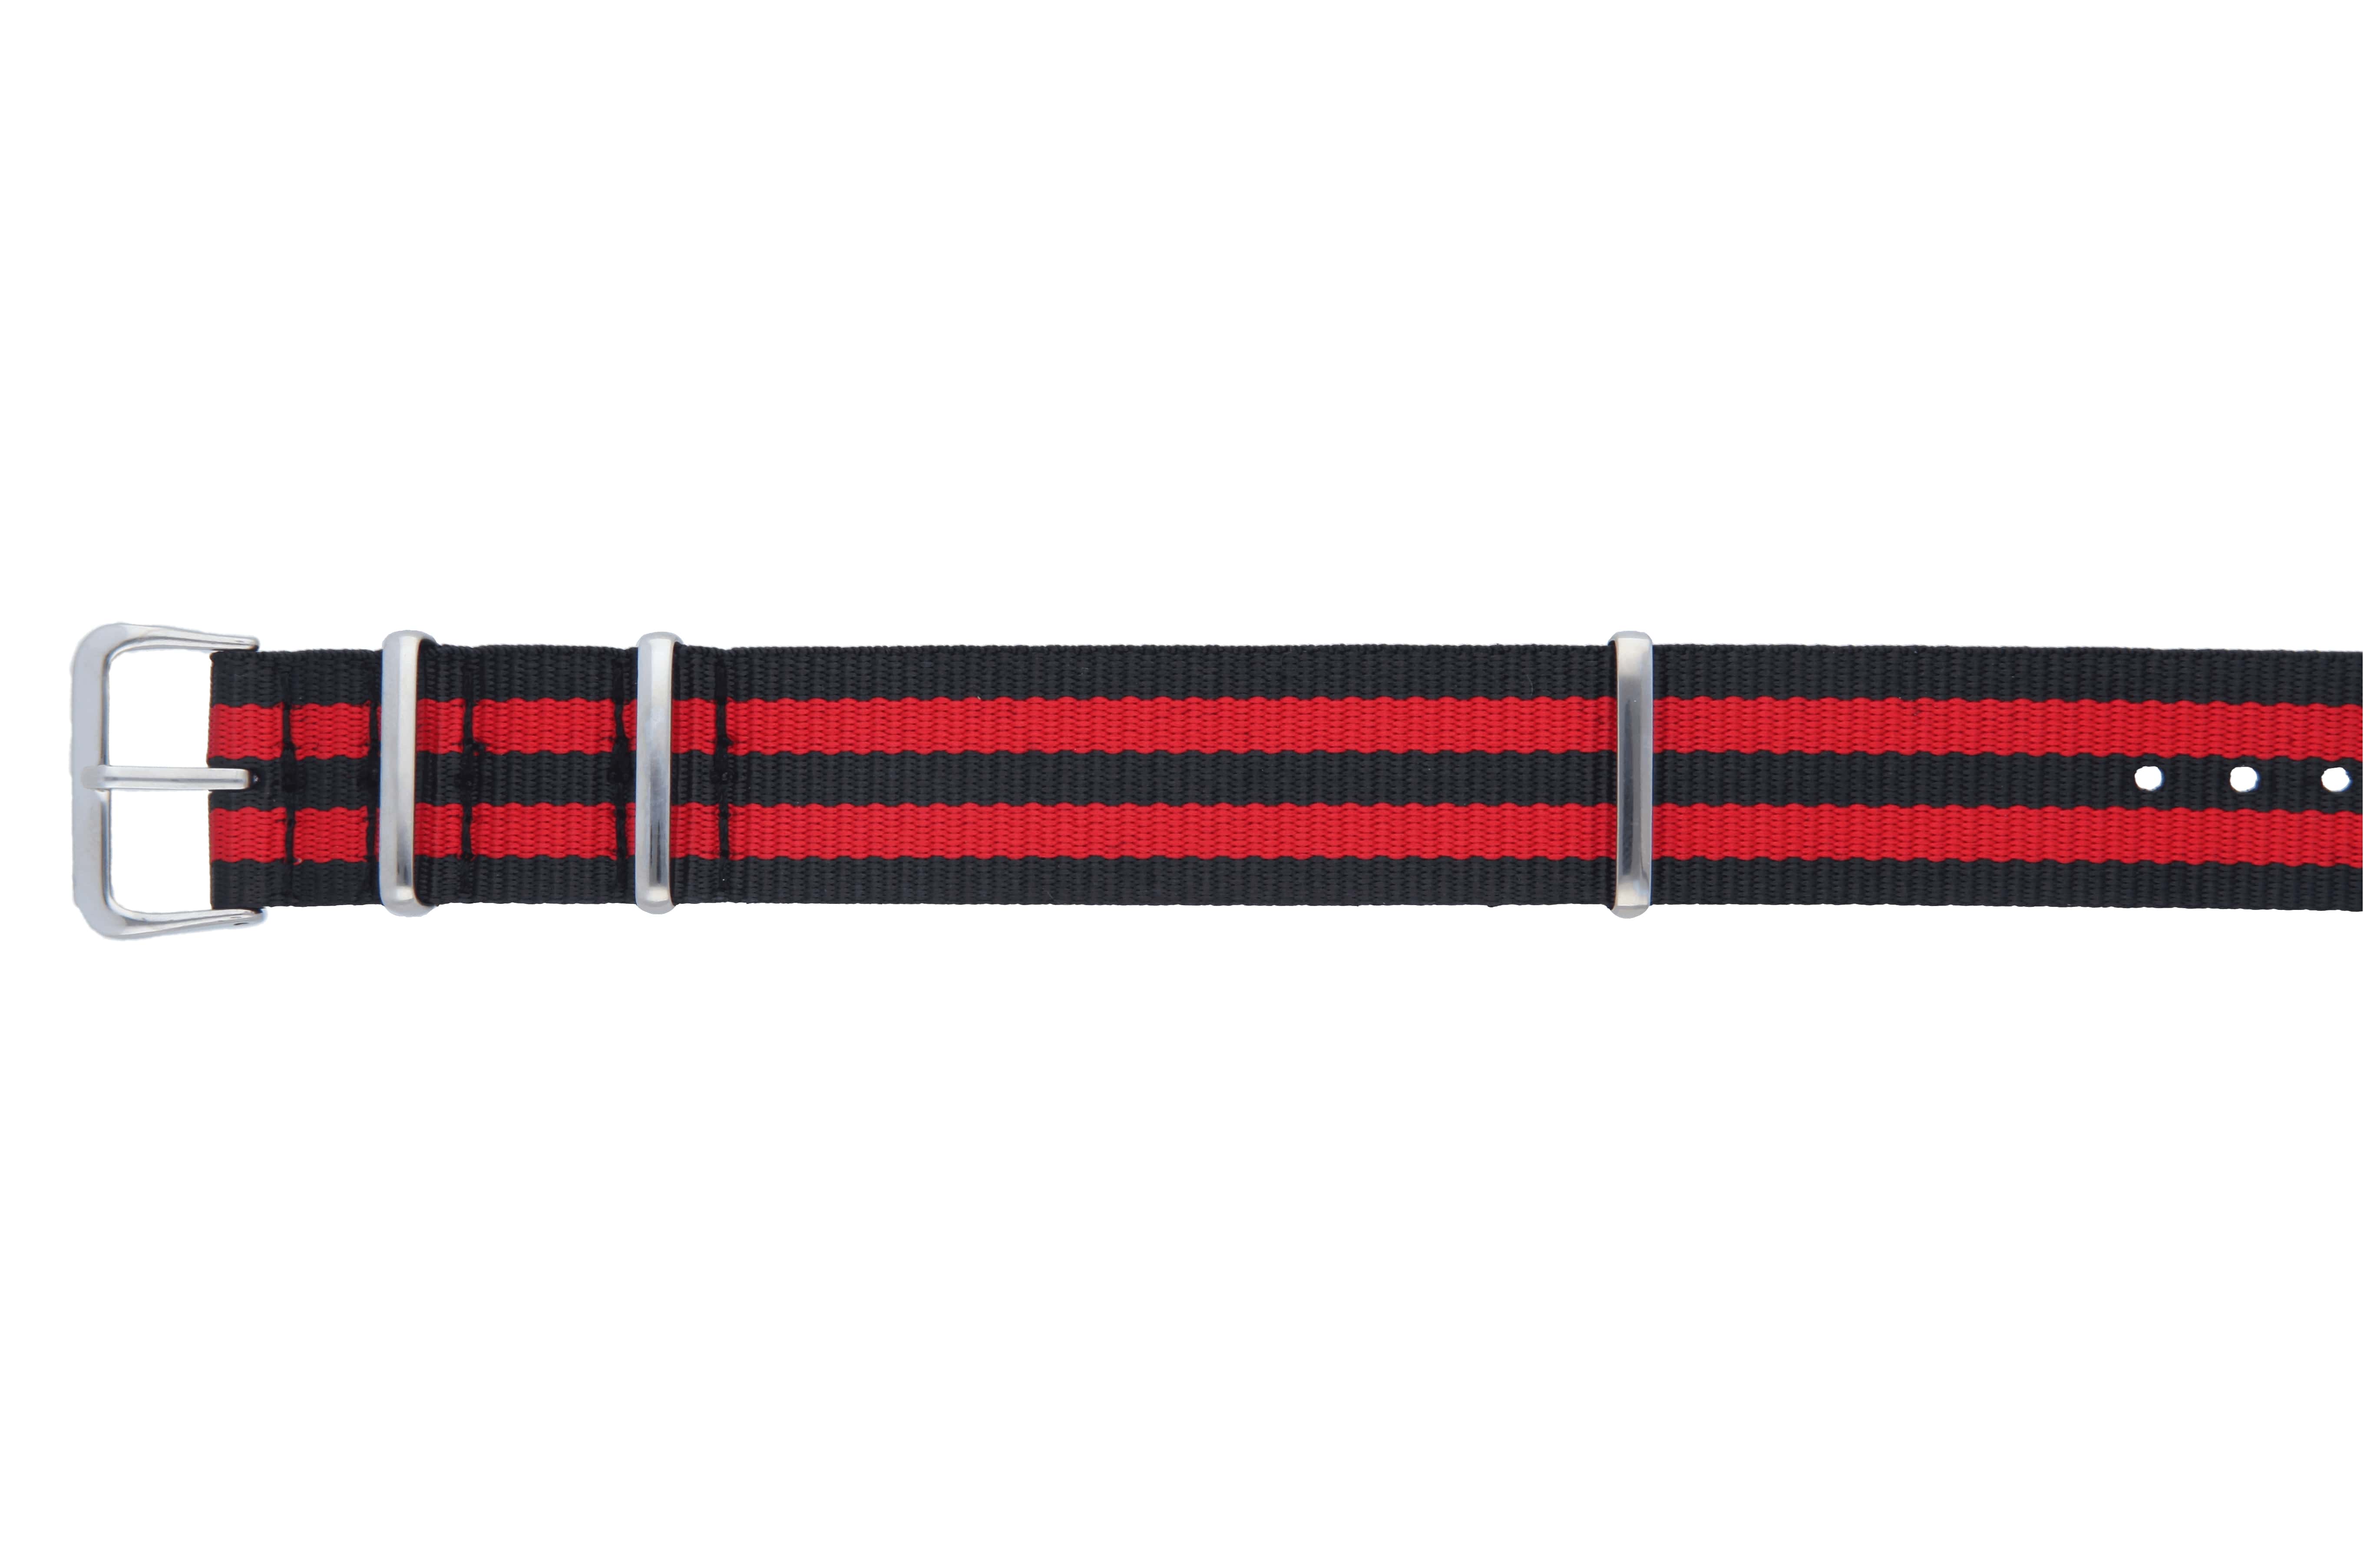 MedicAlert heritage medical ID bracelet strap in red and black